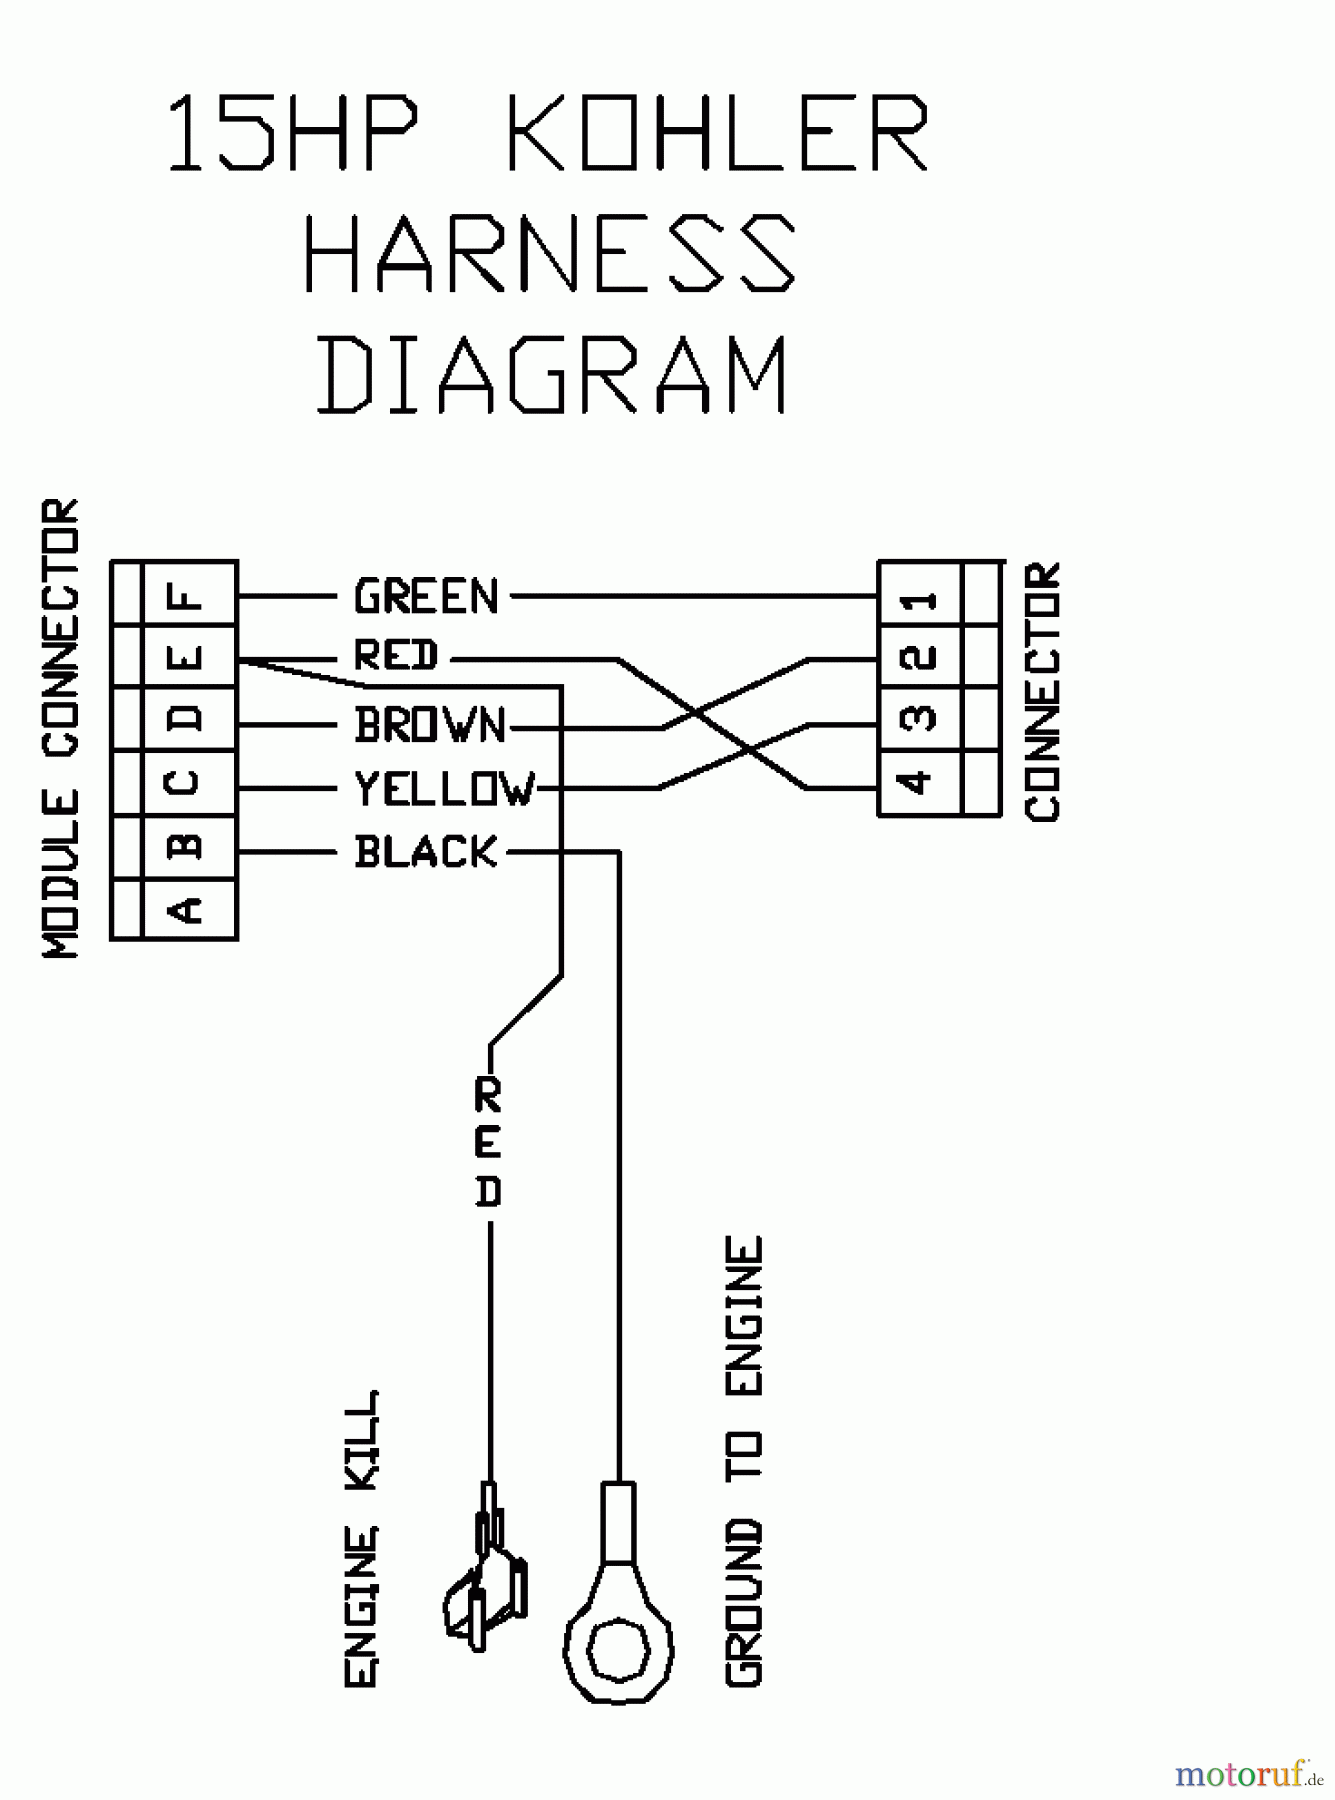  Husqvarna Rasenmäher für Großflächen WH 3614A (968999105) - Husqvarna Wide-Area Walk-Behind Mower (2000-06 to 2001-01) 15 HP Kohler Harness Diagram